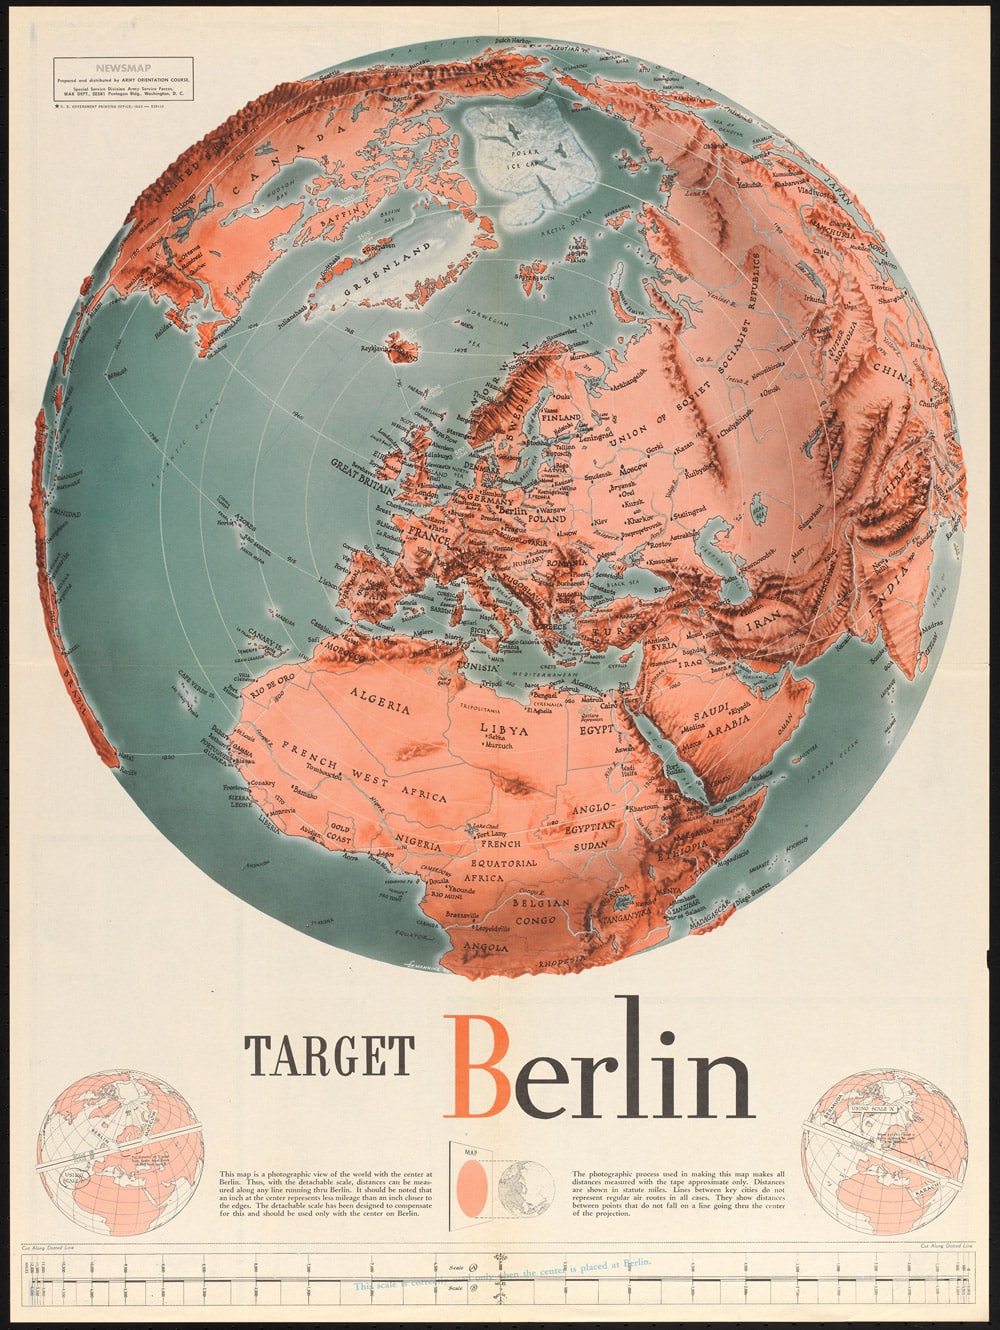 Kartendesign PAGE 10.2022 Newsmap Berlin vom Oktober 1943 für die US-amerikanischen Special Forces im Zweiten Weltkrieg